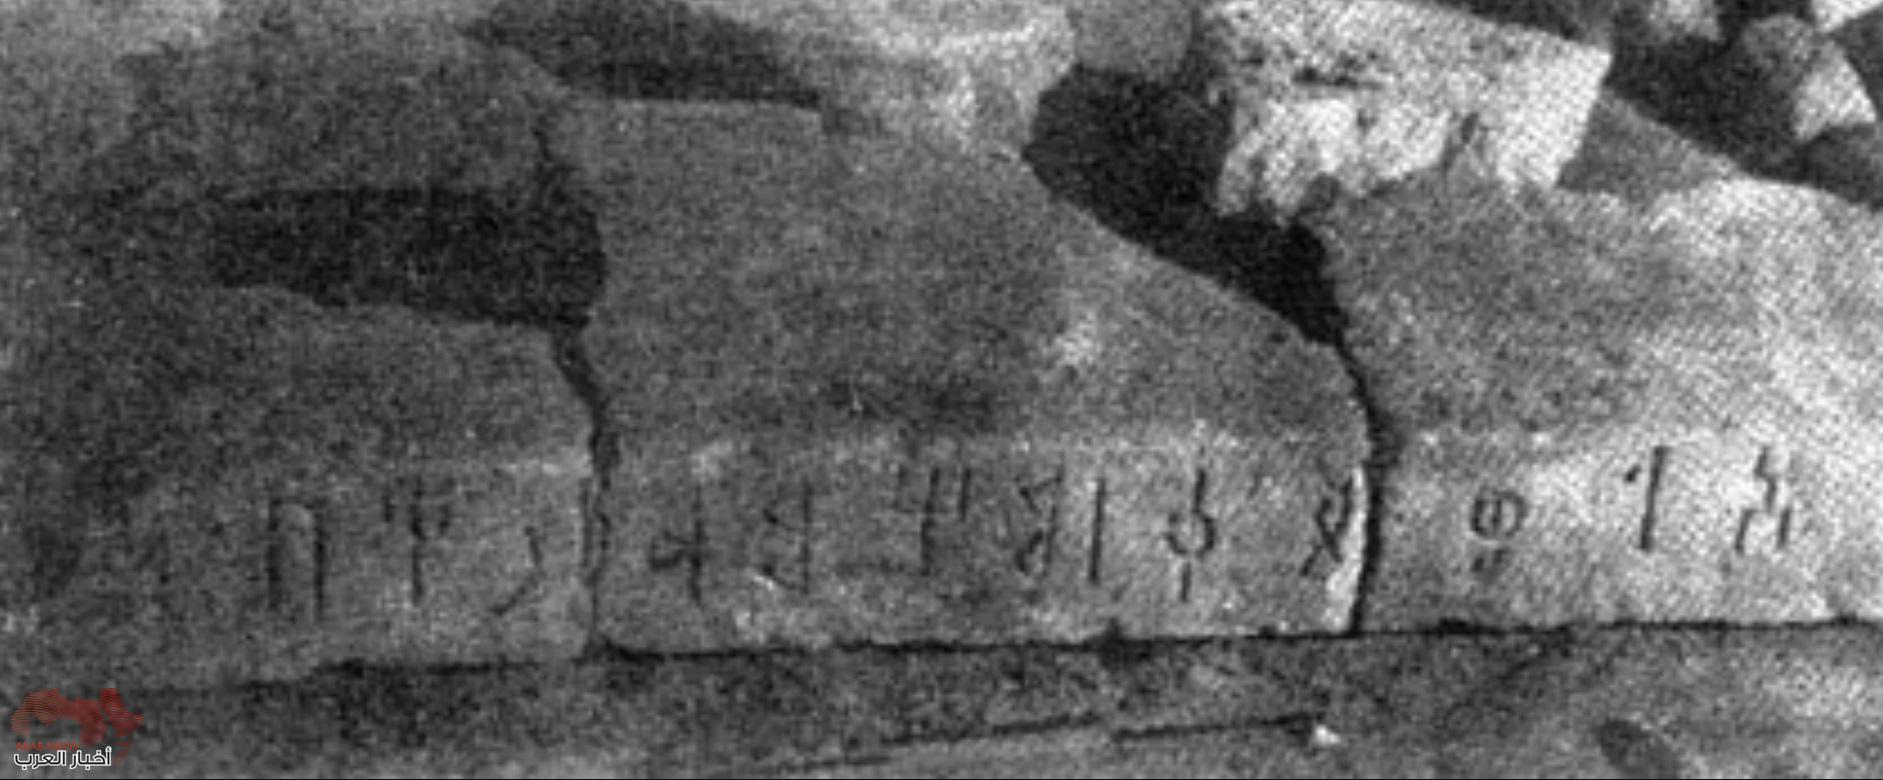 العثور على اسم محمد في  نقش يعود للقرن الرابع قبل الميلاد